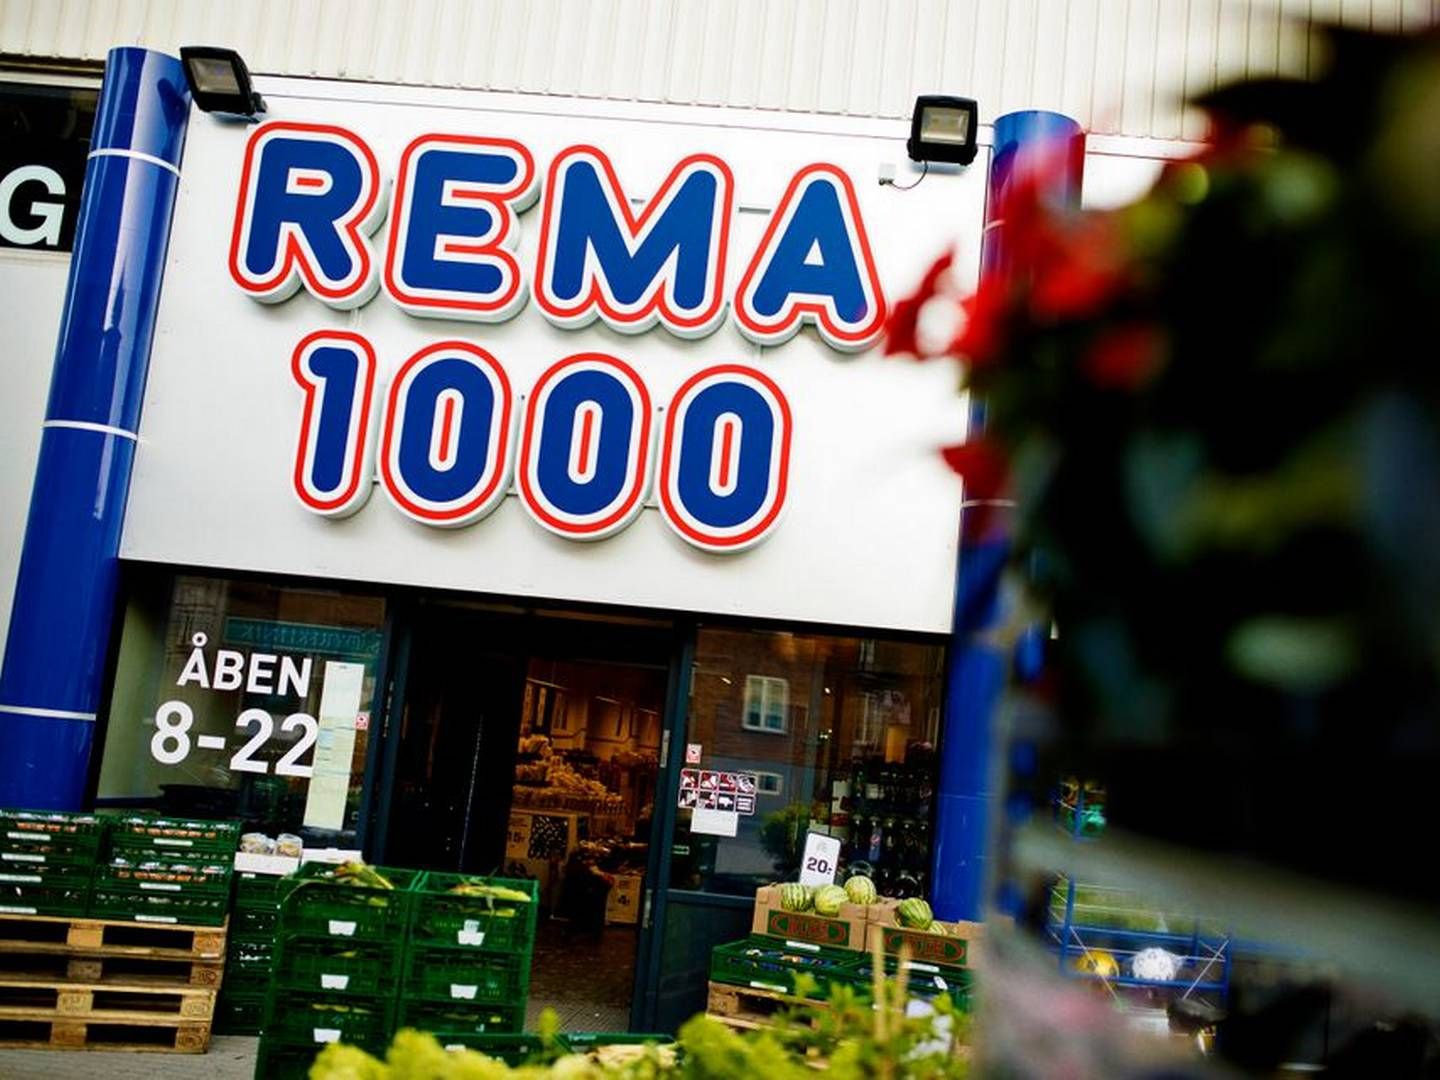 Rema 1000 runder i begyndelsen af maj 400 butikker i Danmark. | Foto: Rema 1000/pr